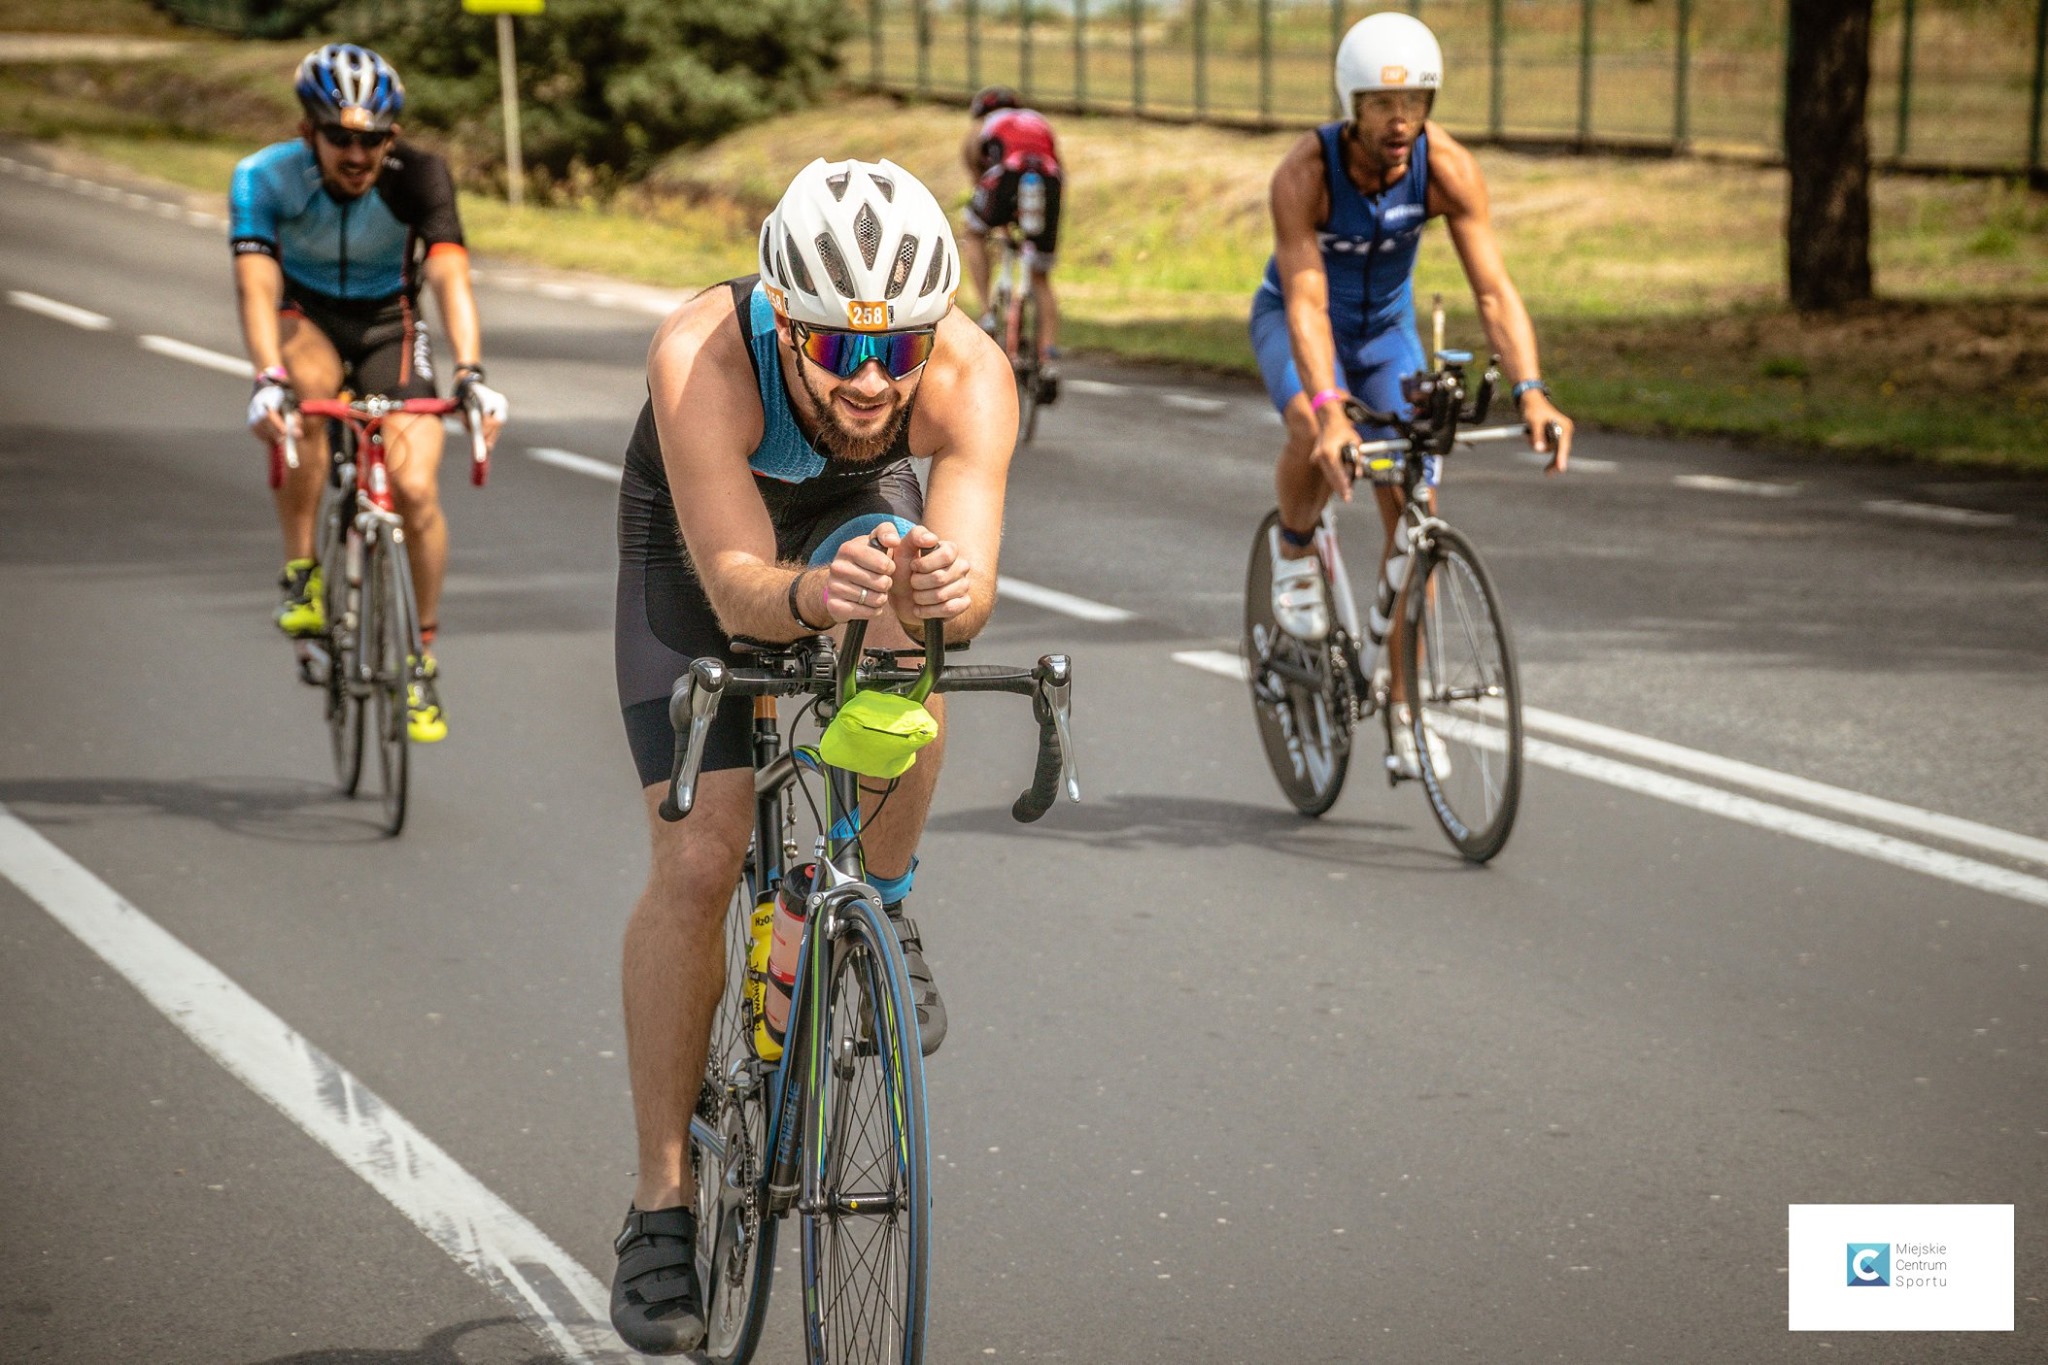 Zawodnicy mieli do przejechania na rowerach 90, 45 lub 22,4 km - w zależności od dystansu